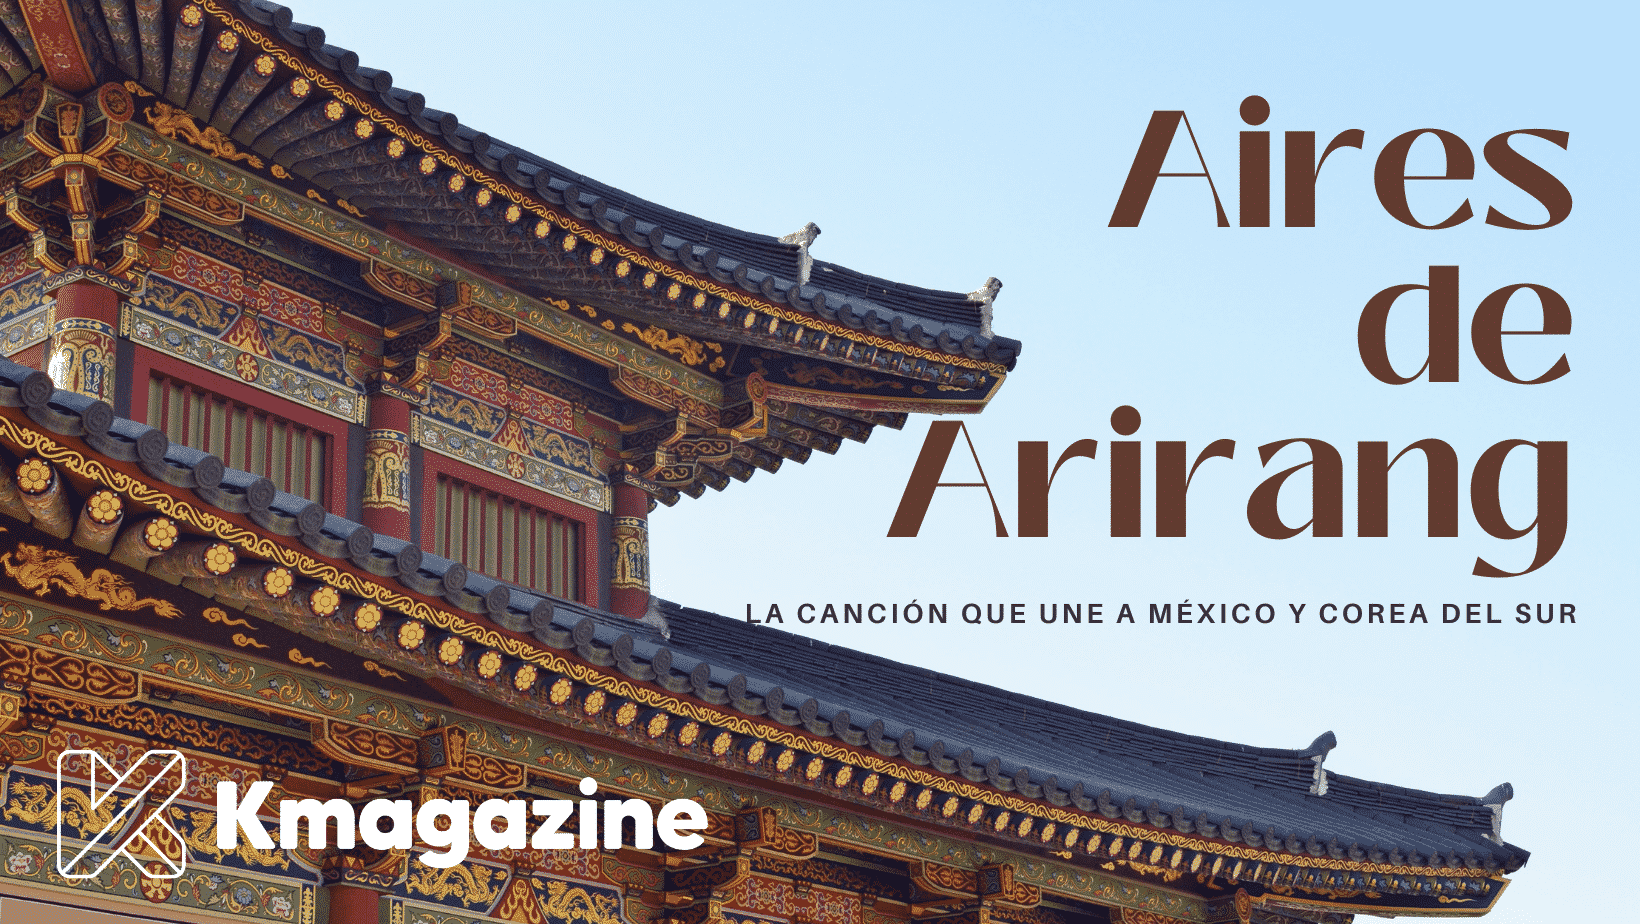 4 cosas que debes saber de “Aires de Arirang”, la canción que une a México y Corea del Sur